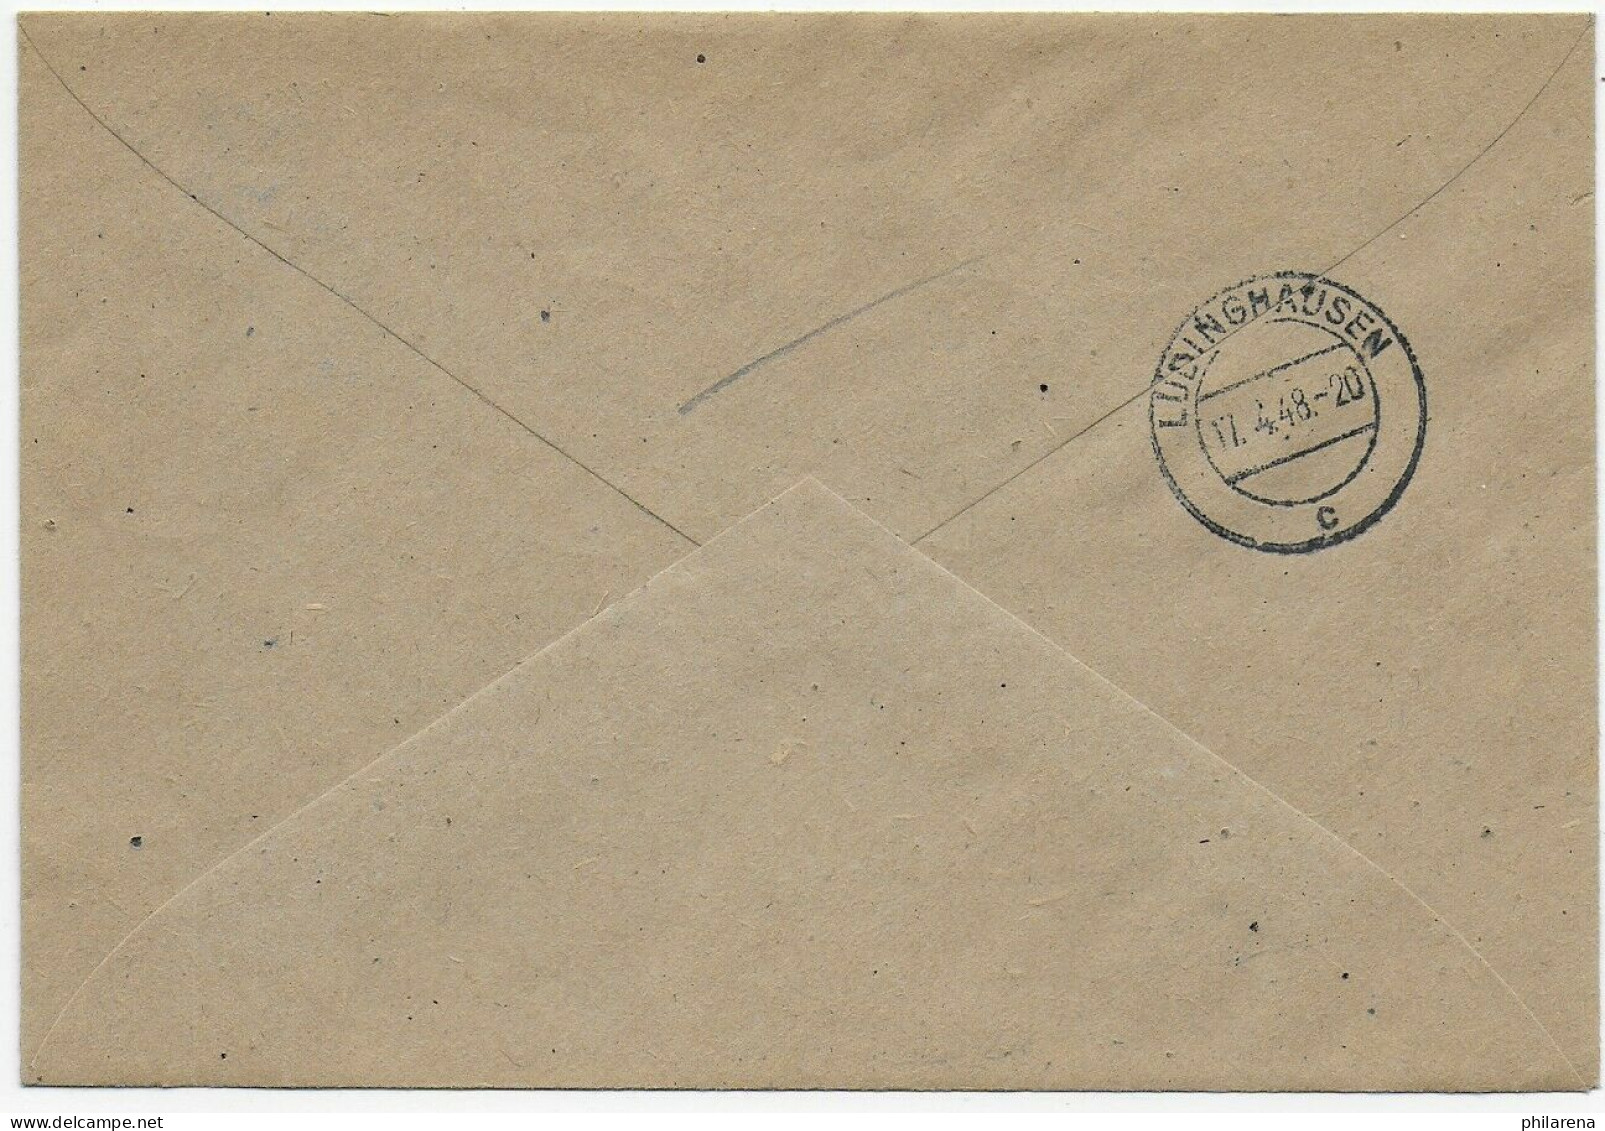 Einschreiben Seppenrade Nach Lüdinghausen, 1948 - Storia Postale